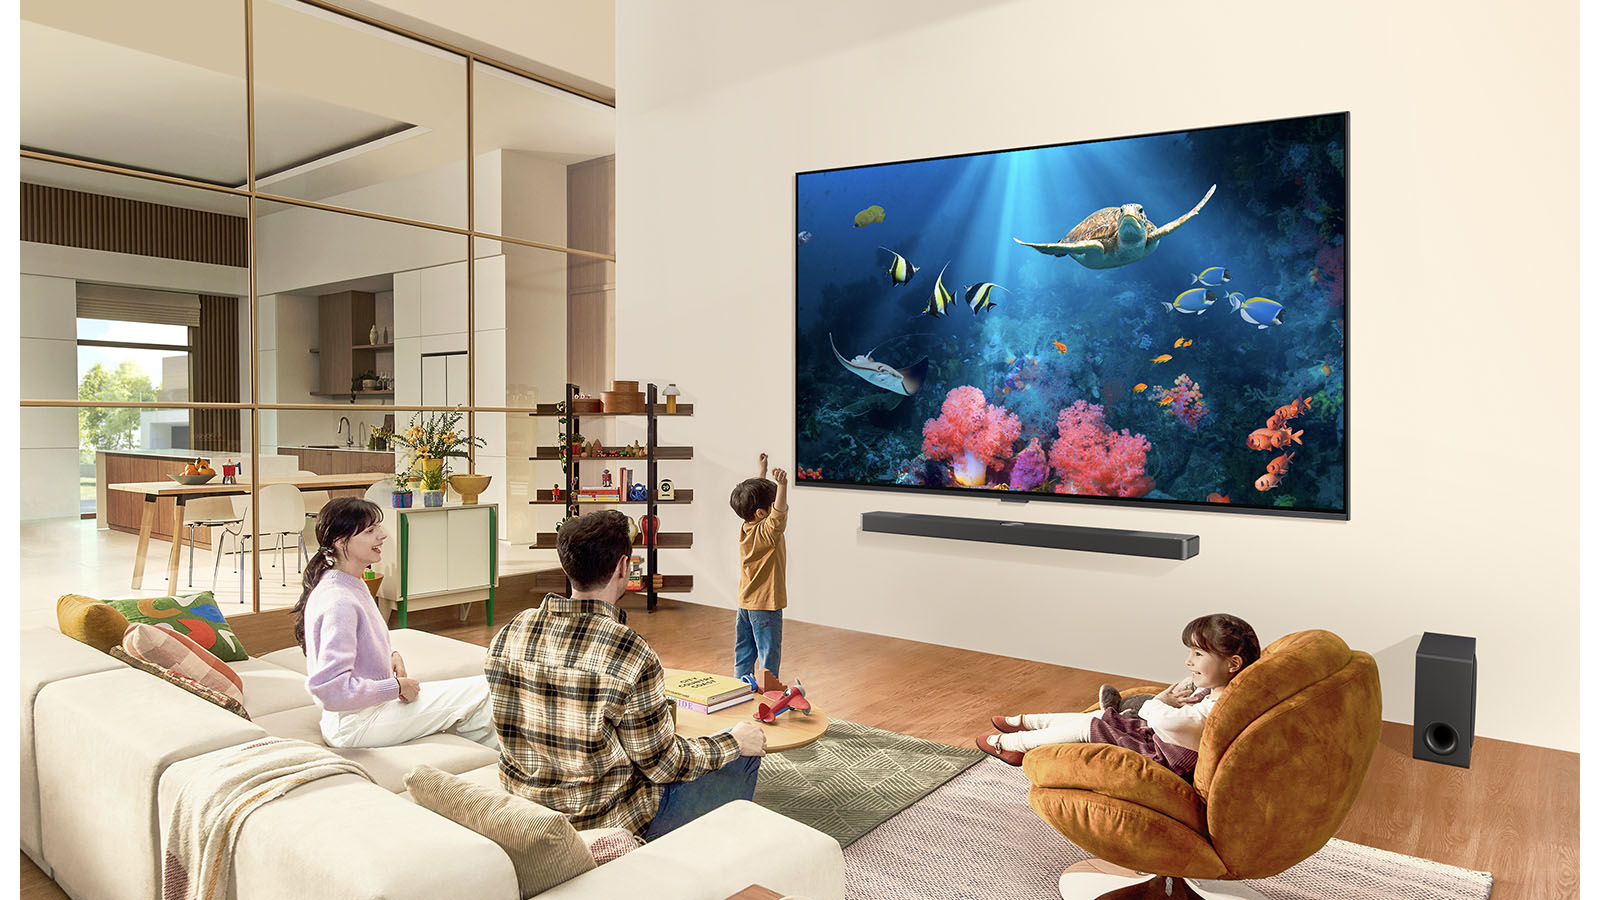 ครอบครัวในห้องนั่งเล่นที่มีทีวี LG ขนาดใหญ่พิเศษติดตั้งอยู่บนผนัง โดยมีฉากมหาสมุทรรวมถึงปะการังและเต่าอยู่บนหน้าจอ